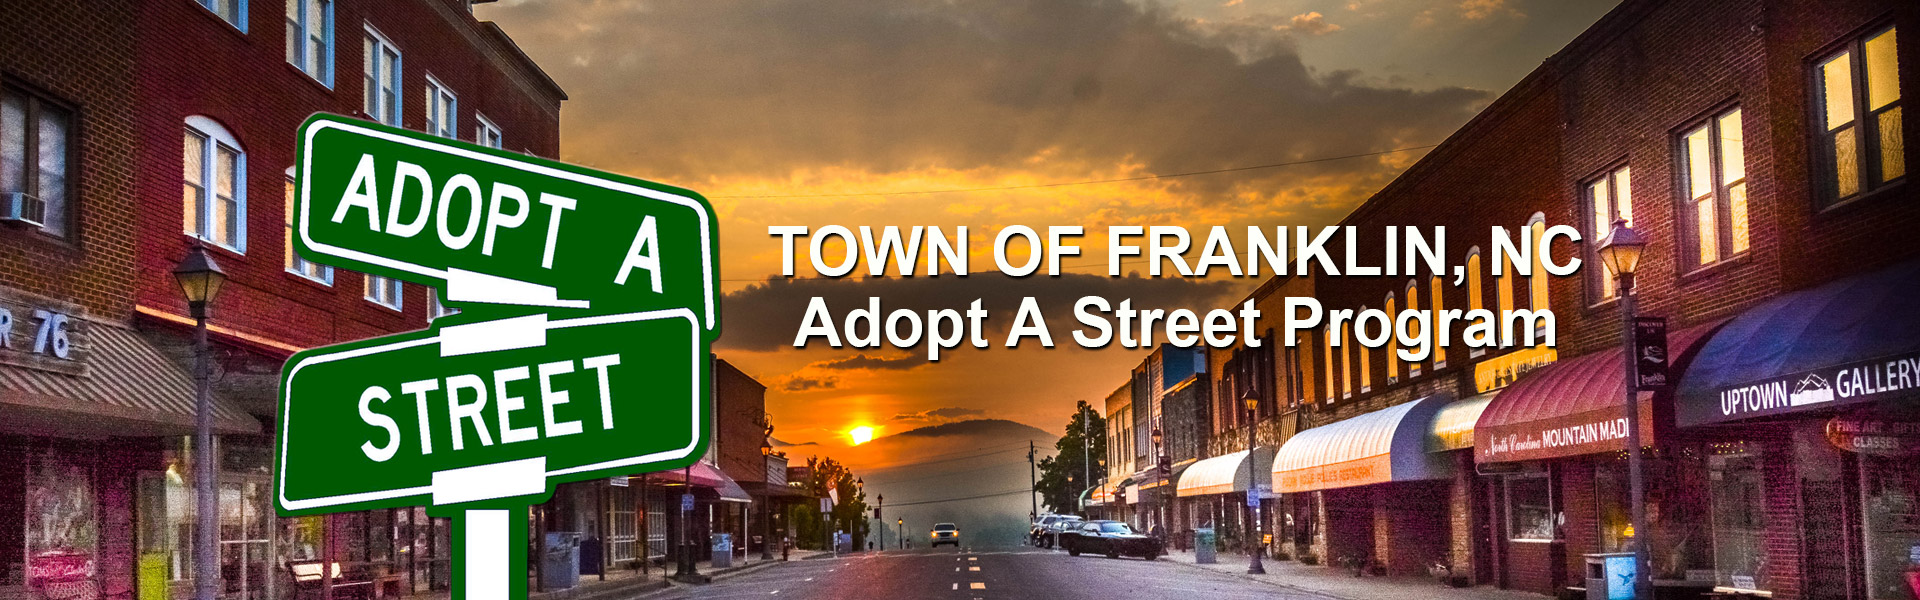 adopt a street program franklin nc